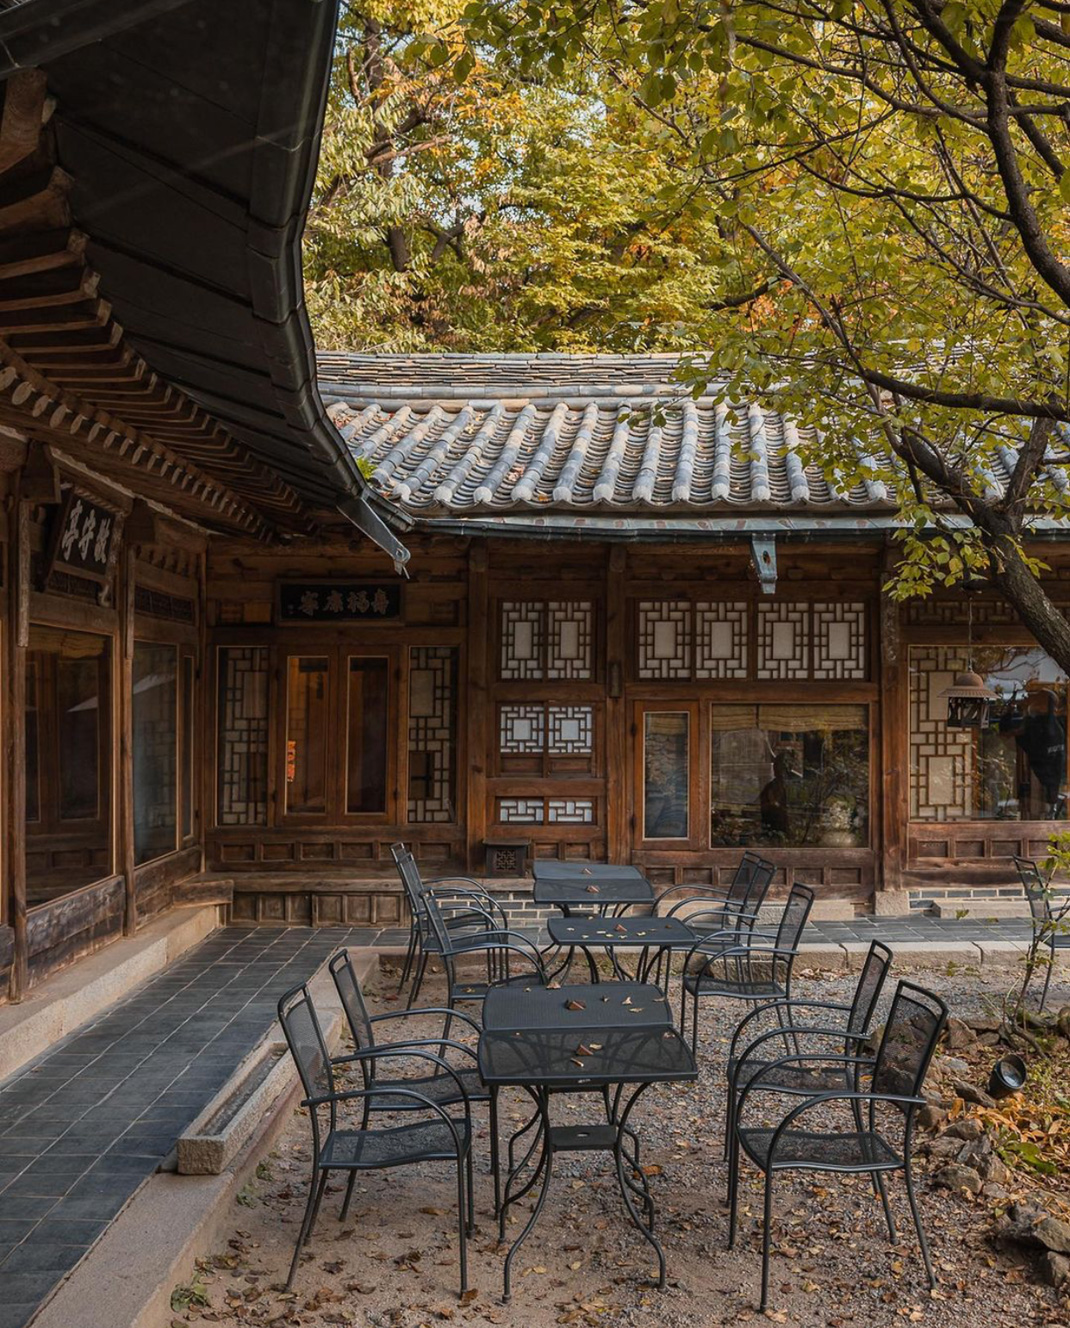 一家位于森林中的茶馆 韩国 首尔 茶馆 庭院 古建筑 logo设计 vi设计 空间设计